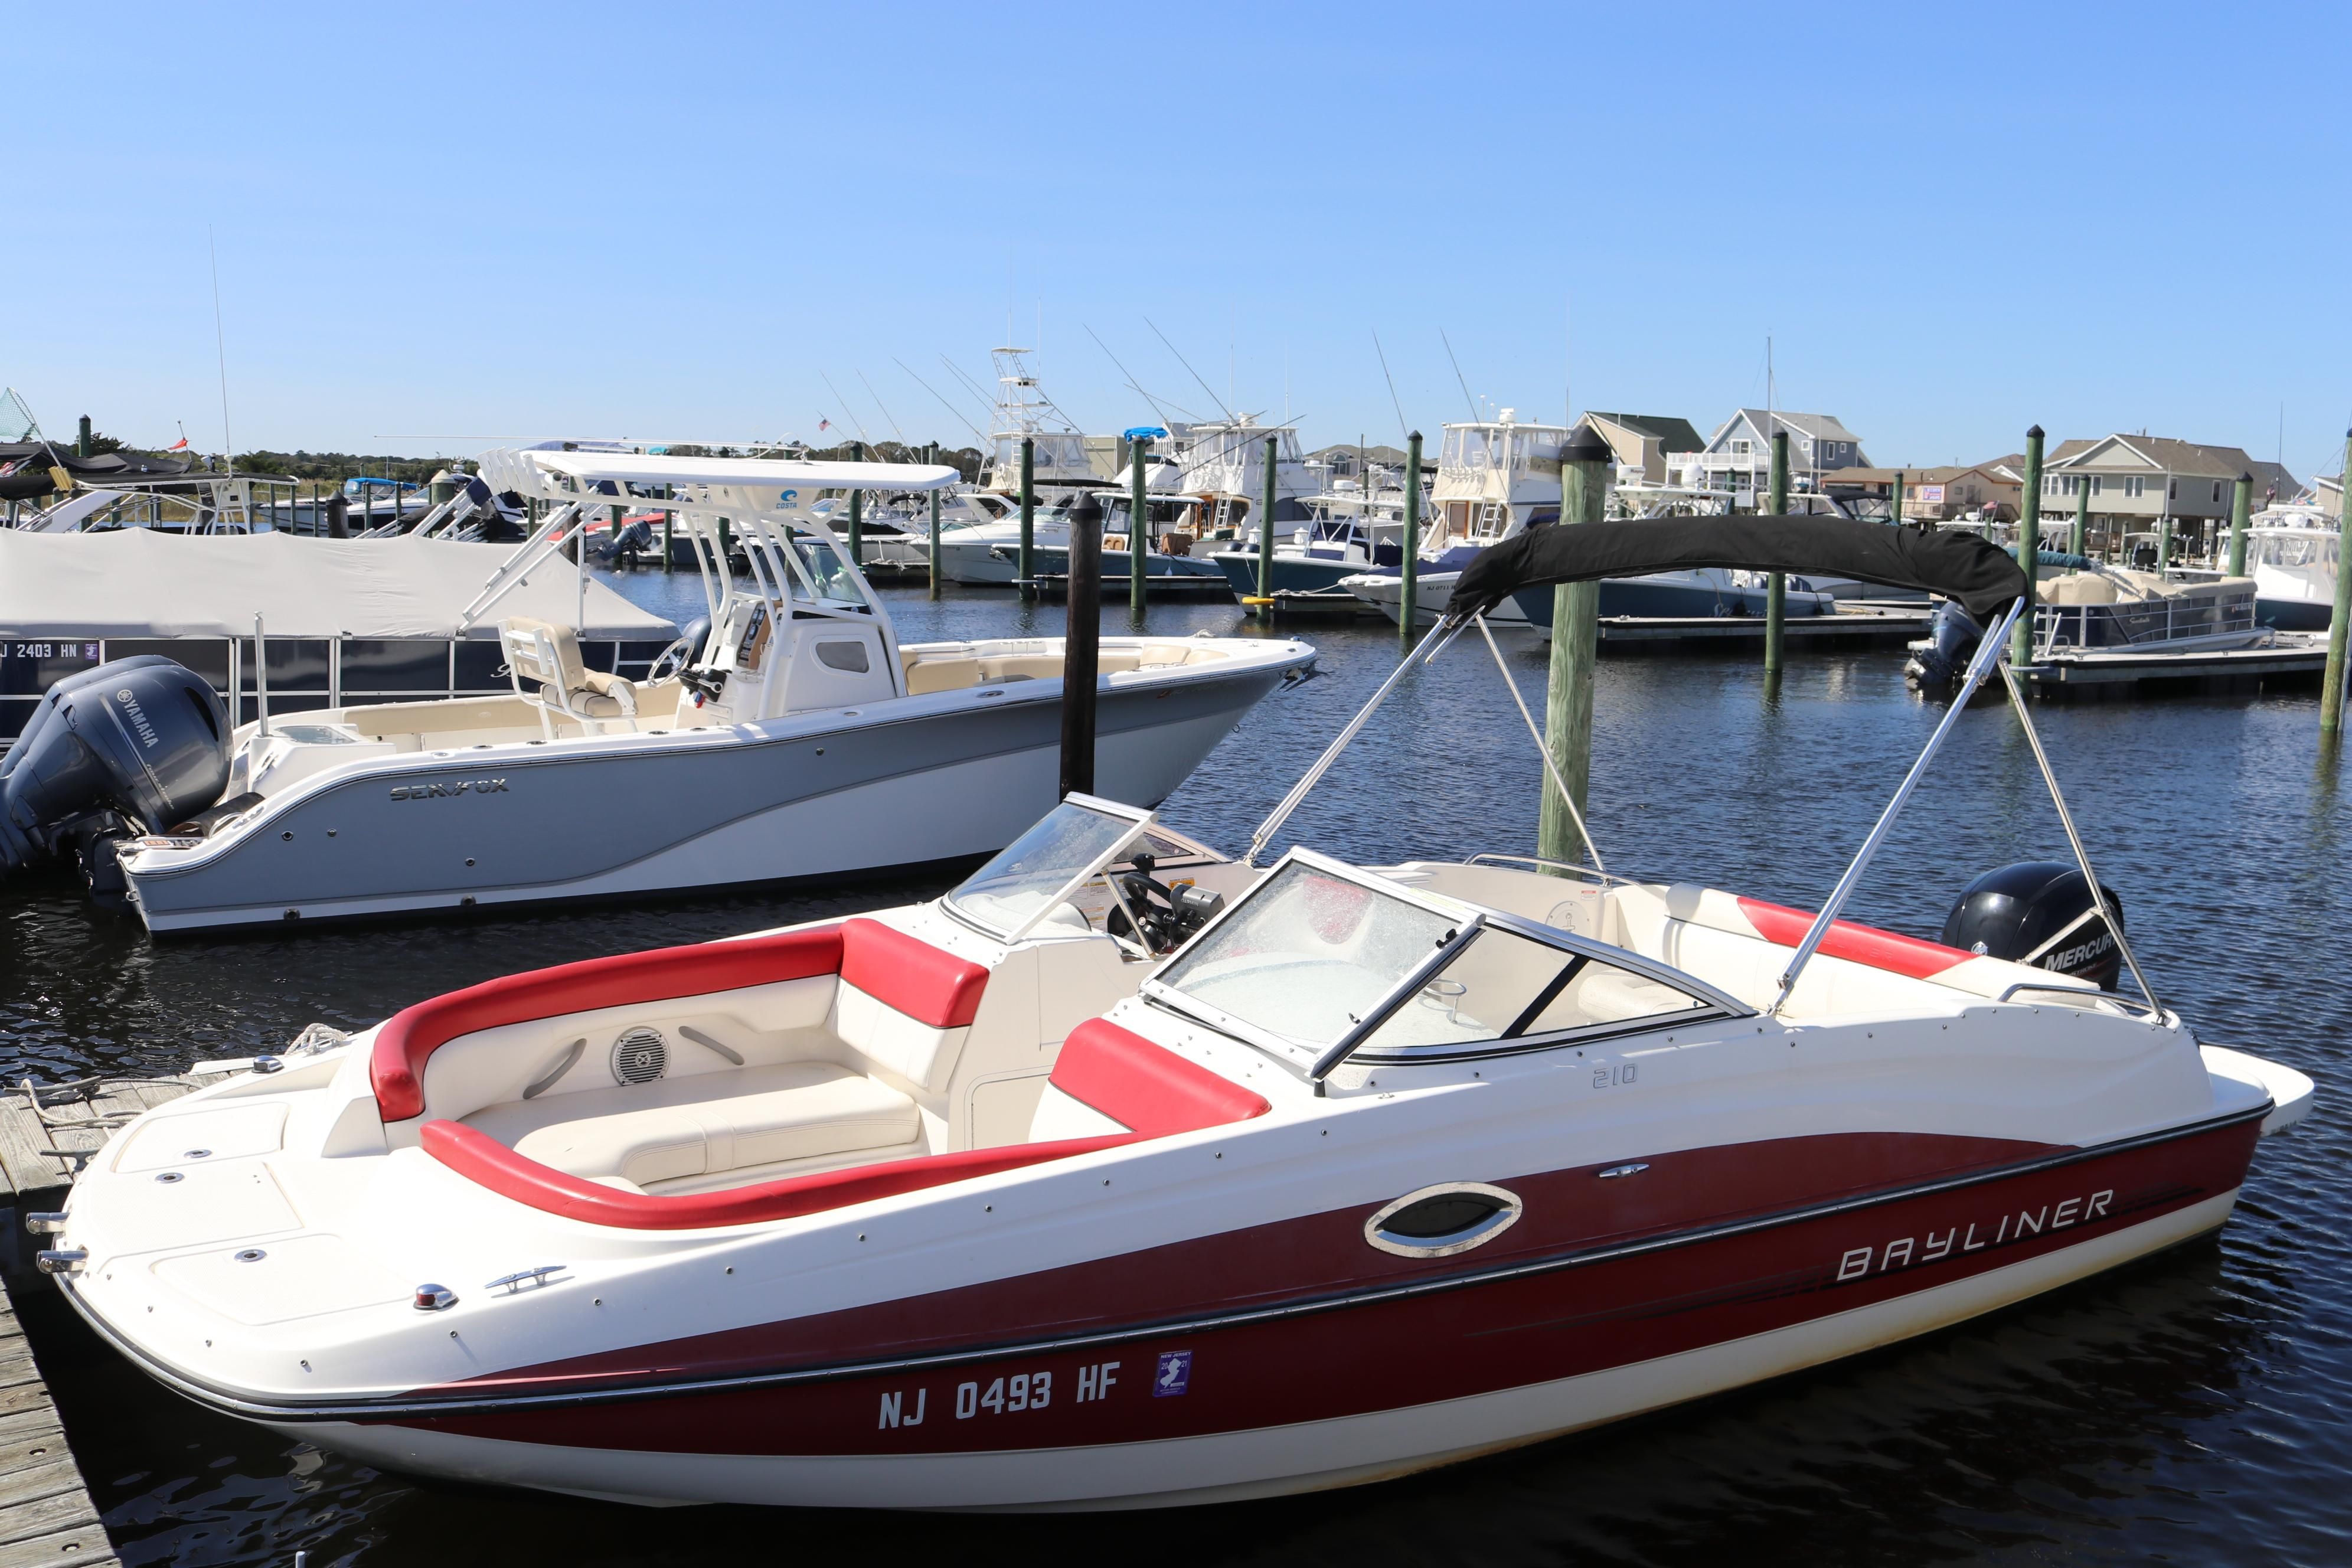 2013 Bayliner 210 Deck Boat Bowrider for sale YachtWorld